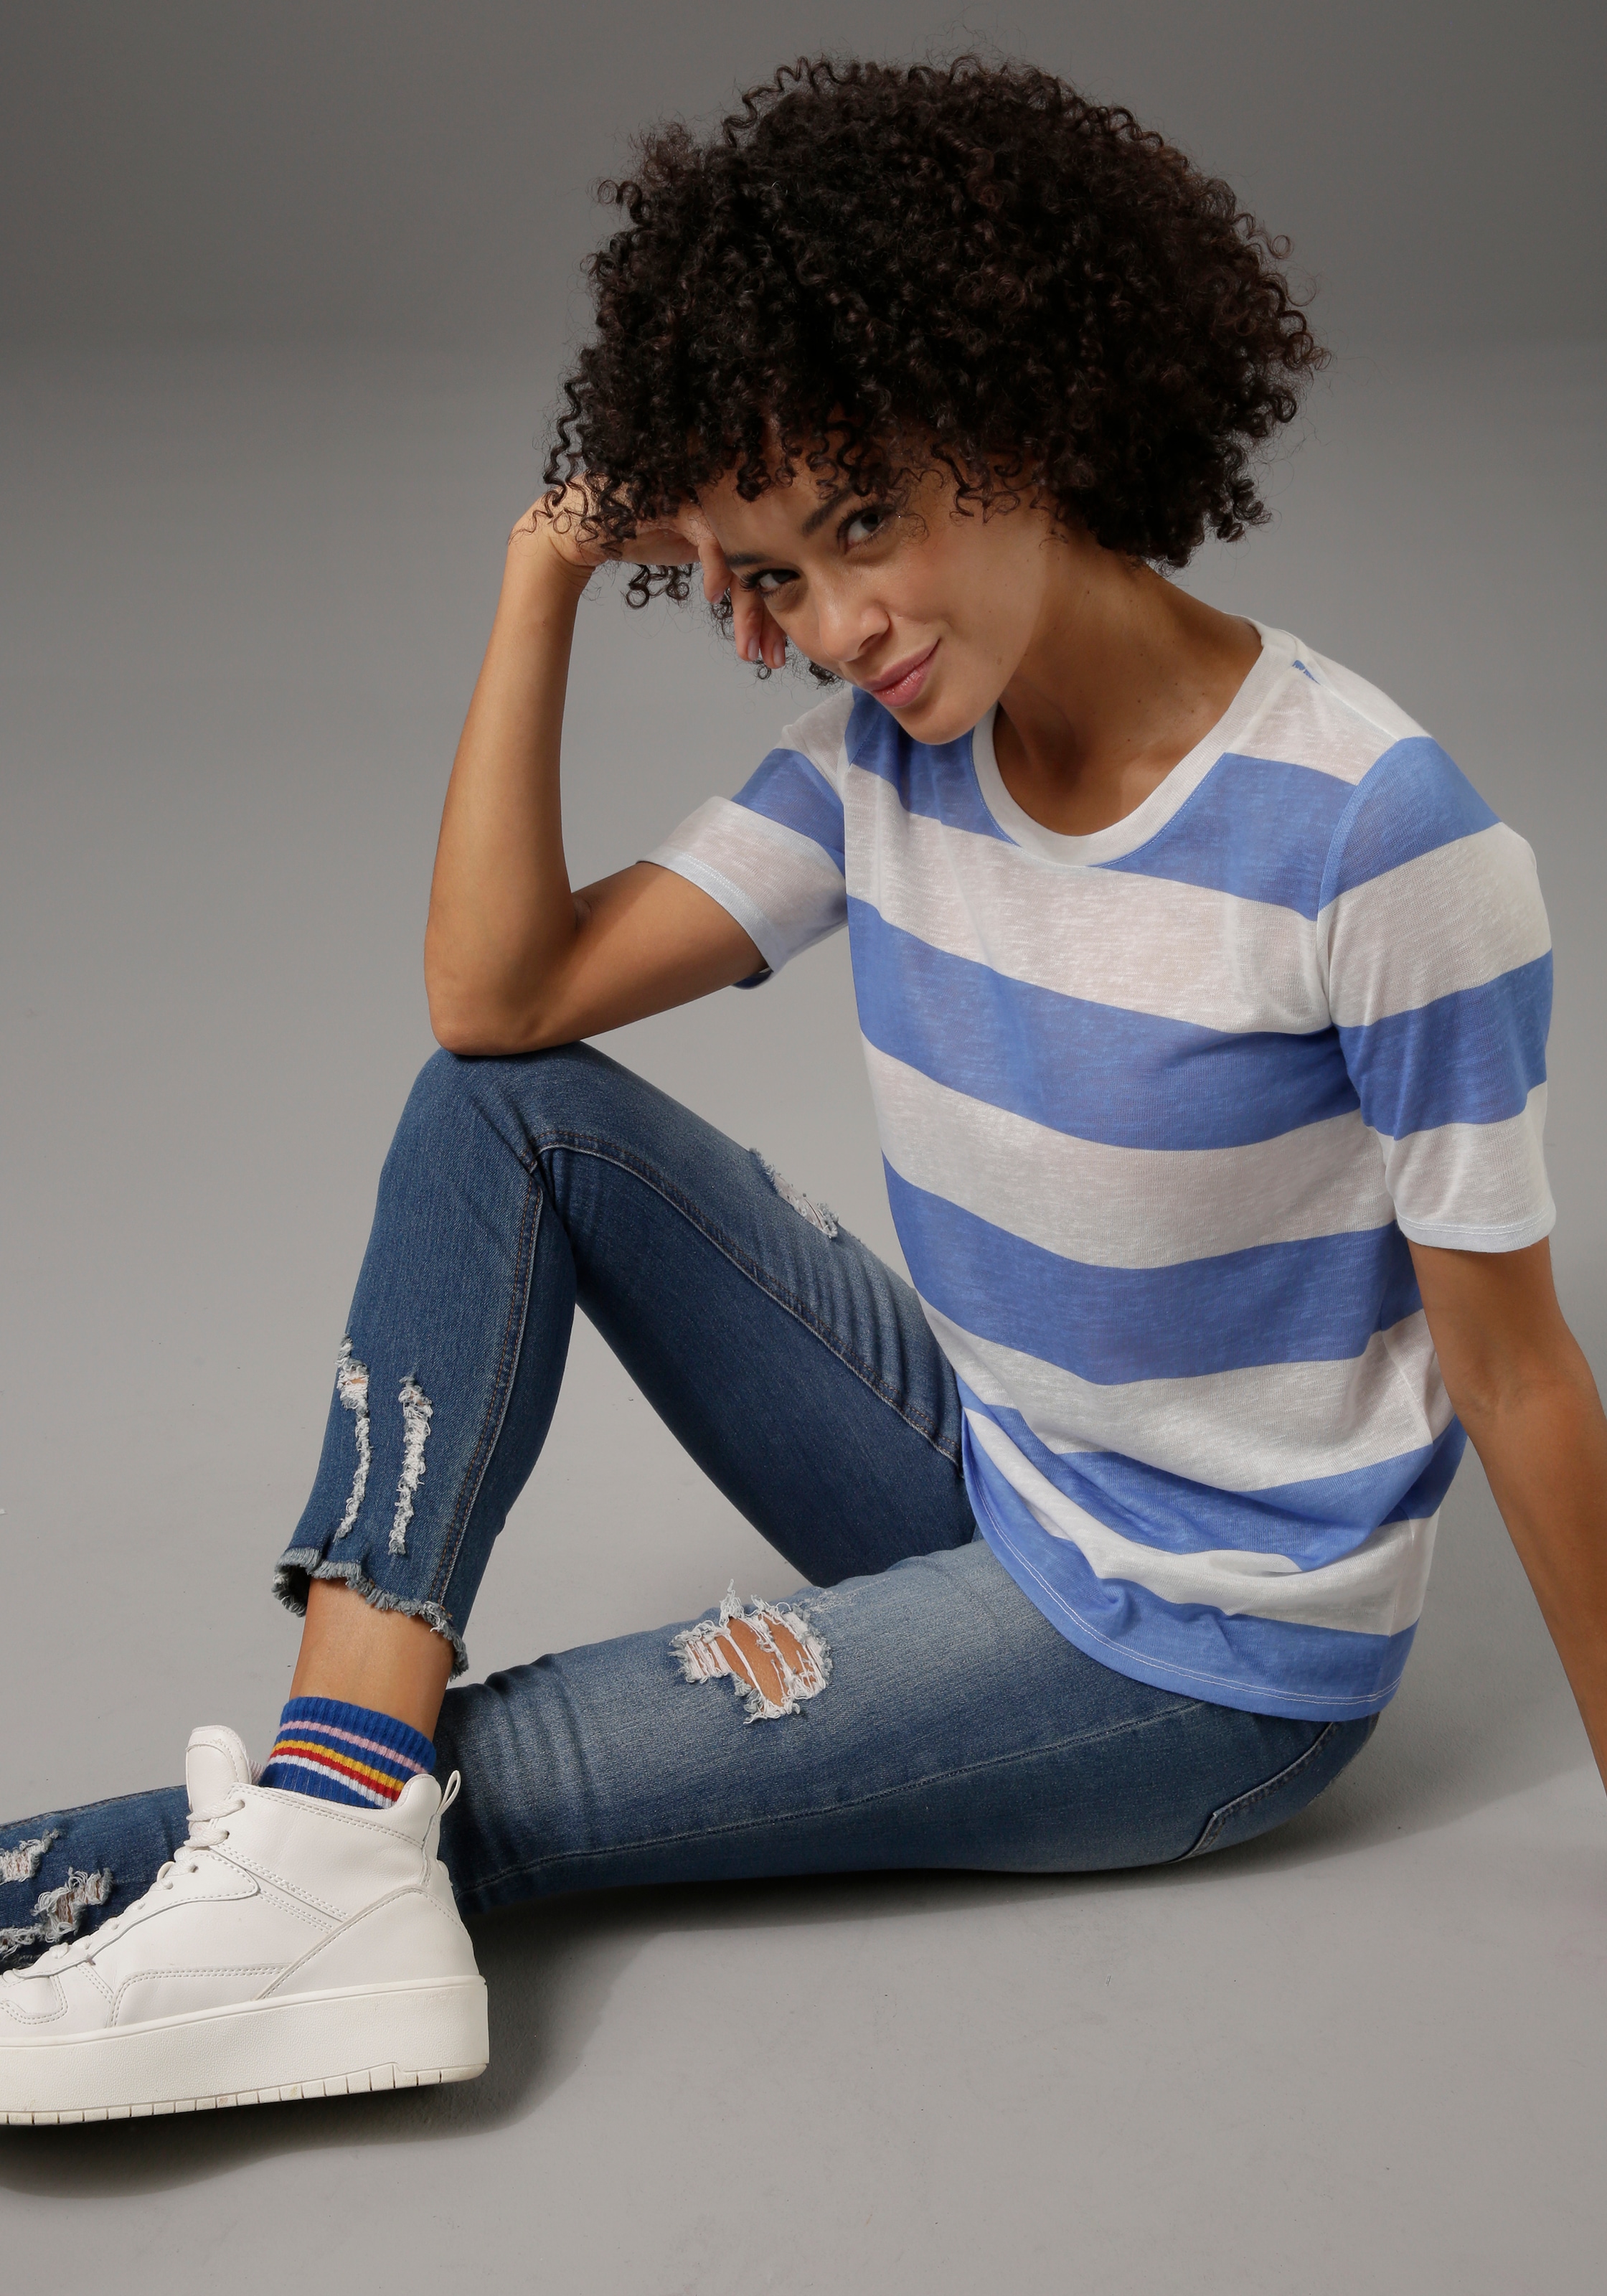 Online Destroyed-Effekt Shop mit Skinny-fit-Jeans, CASUAL kaufen OTTO im Aniston